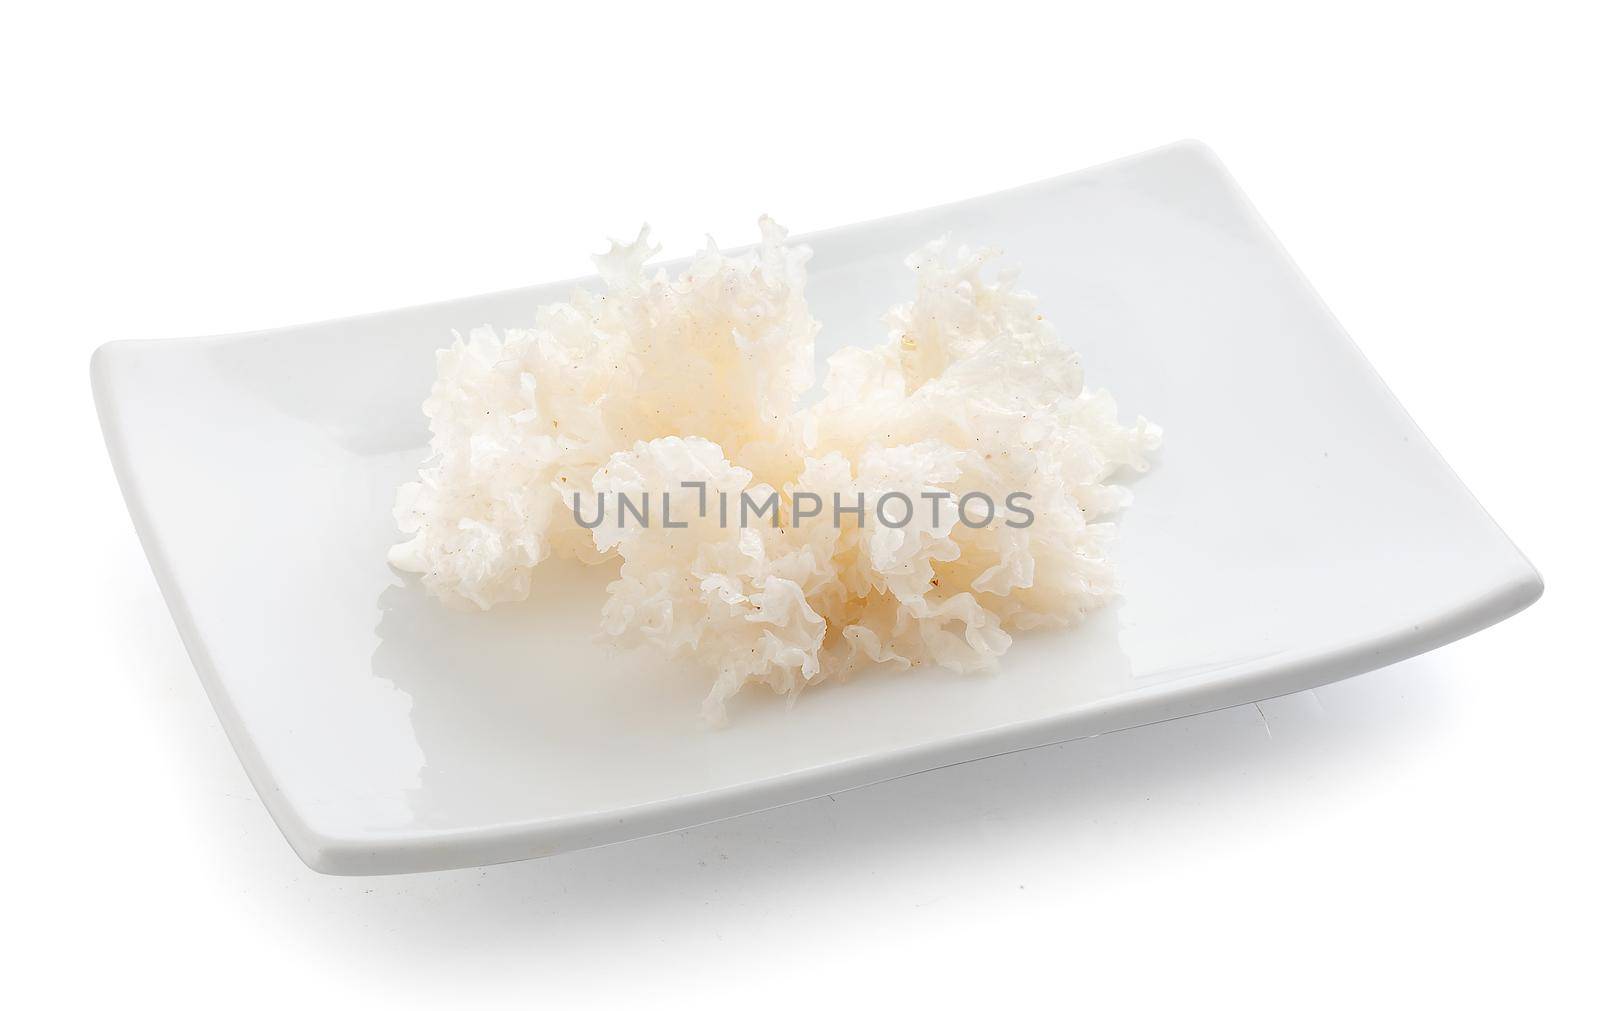 Marinated snow fungus by Angorius